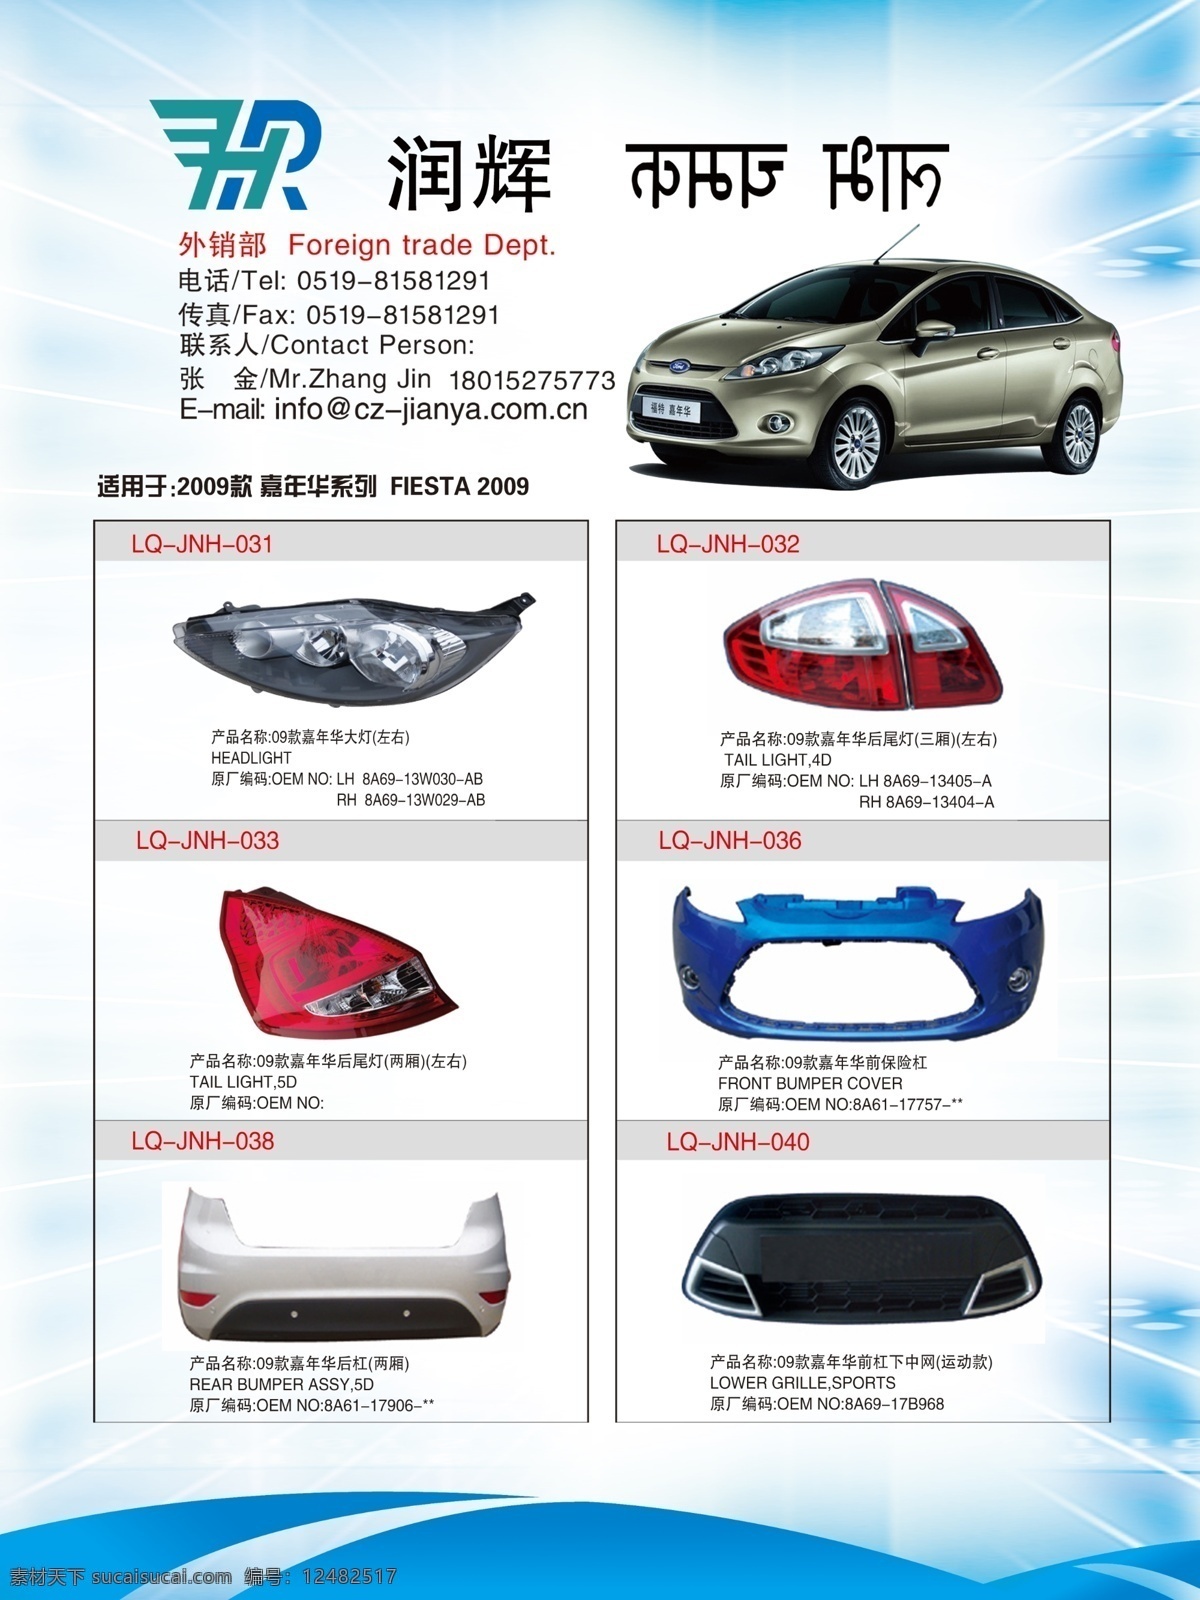 建 亚 开会 汽车产品 展板设计 汽车海报 蓝色背景